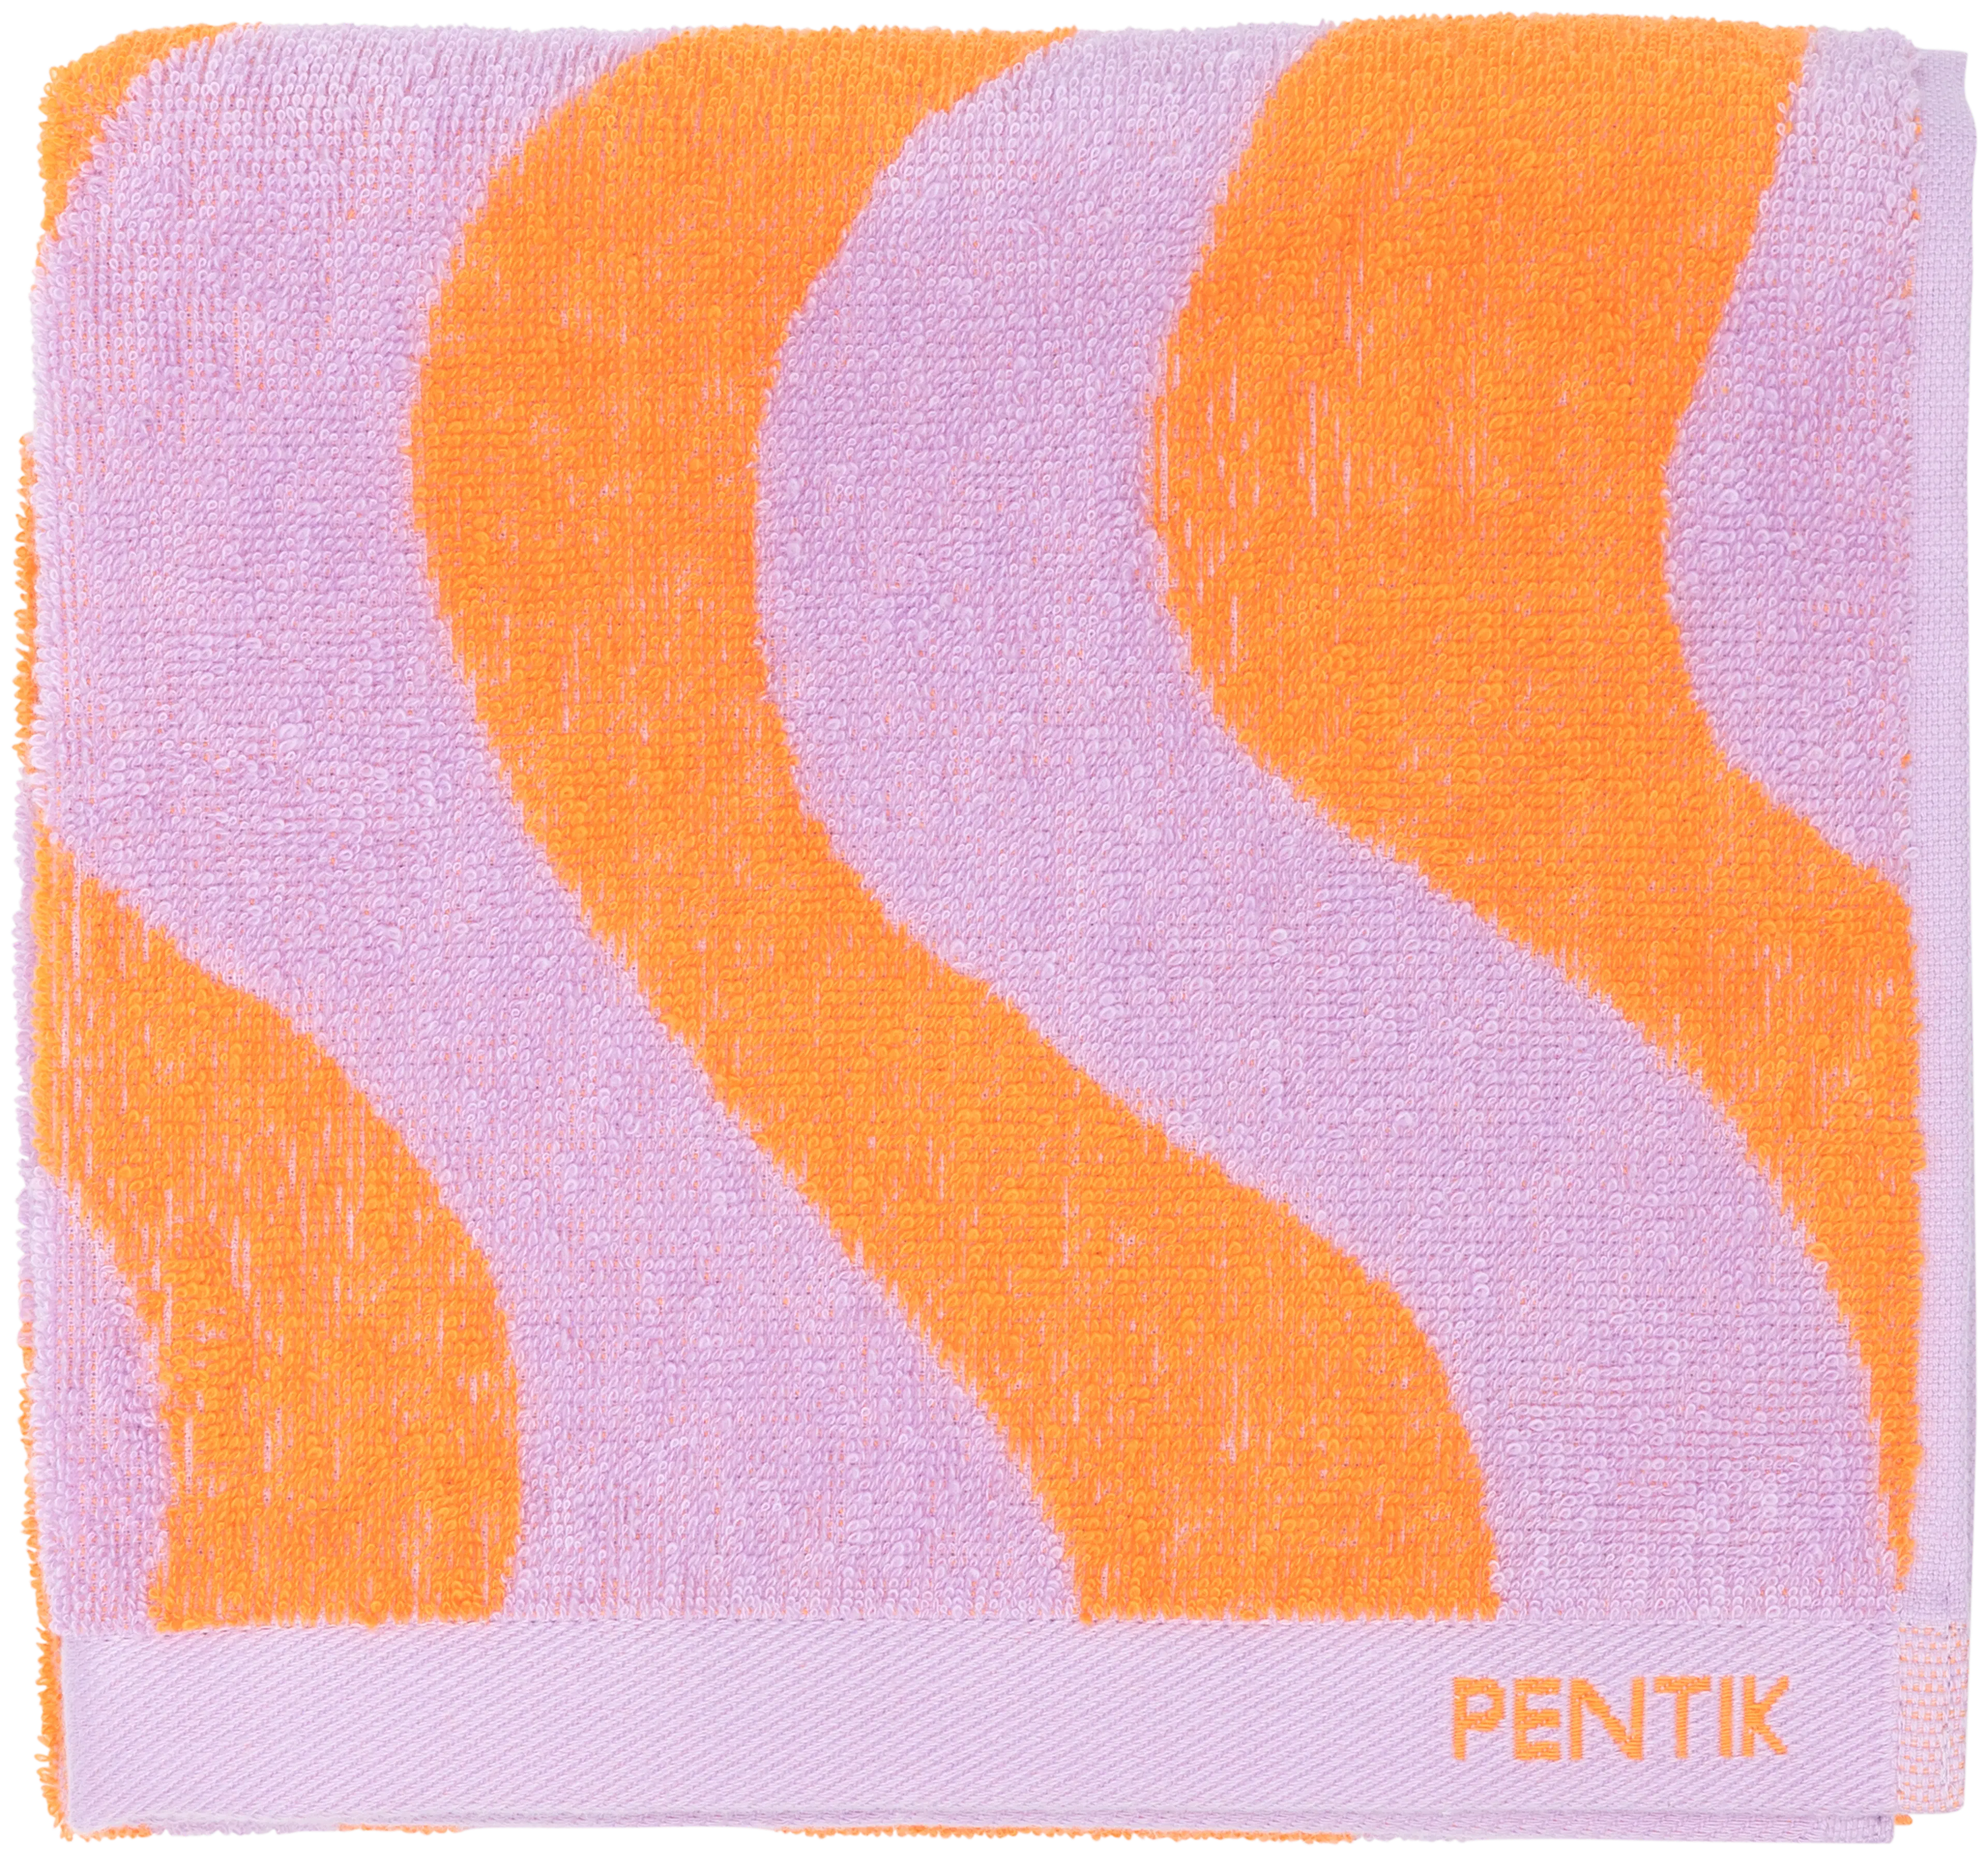 Pentik Hiekka käsipyyhe 50x70 cm, oranssi  